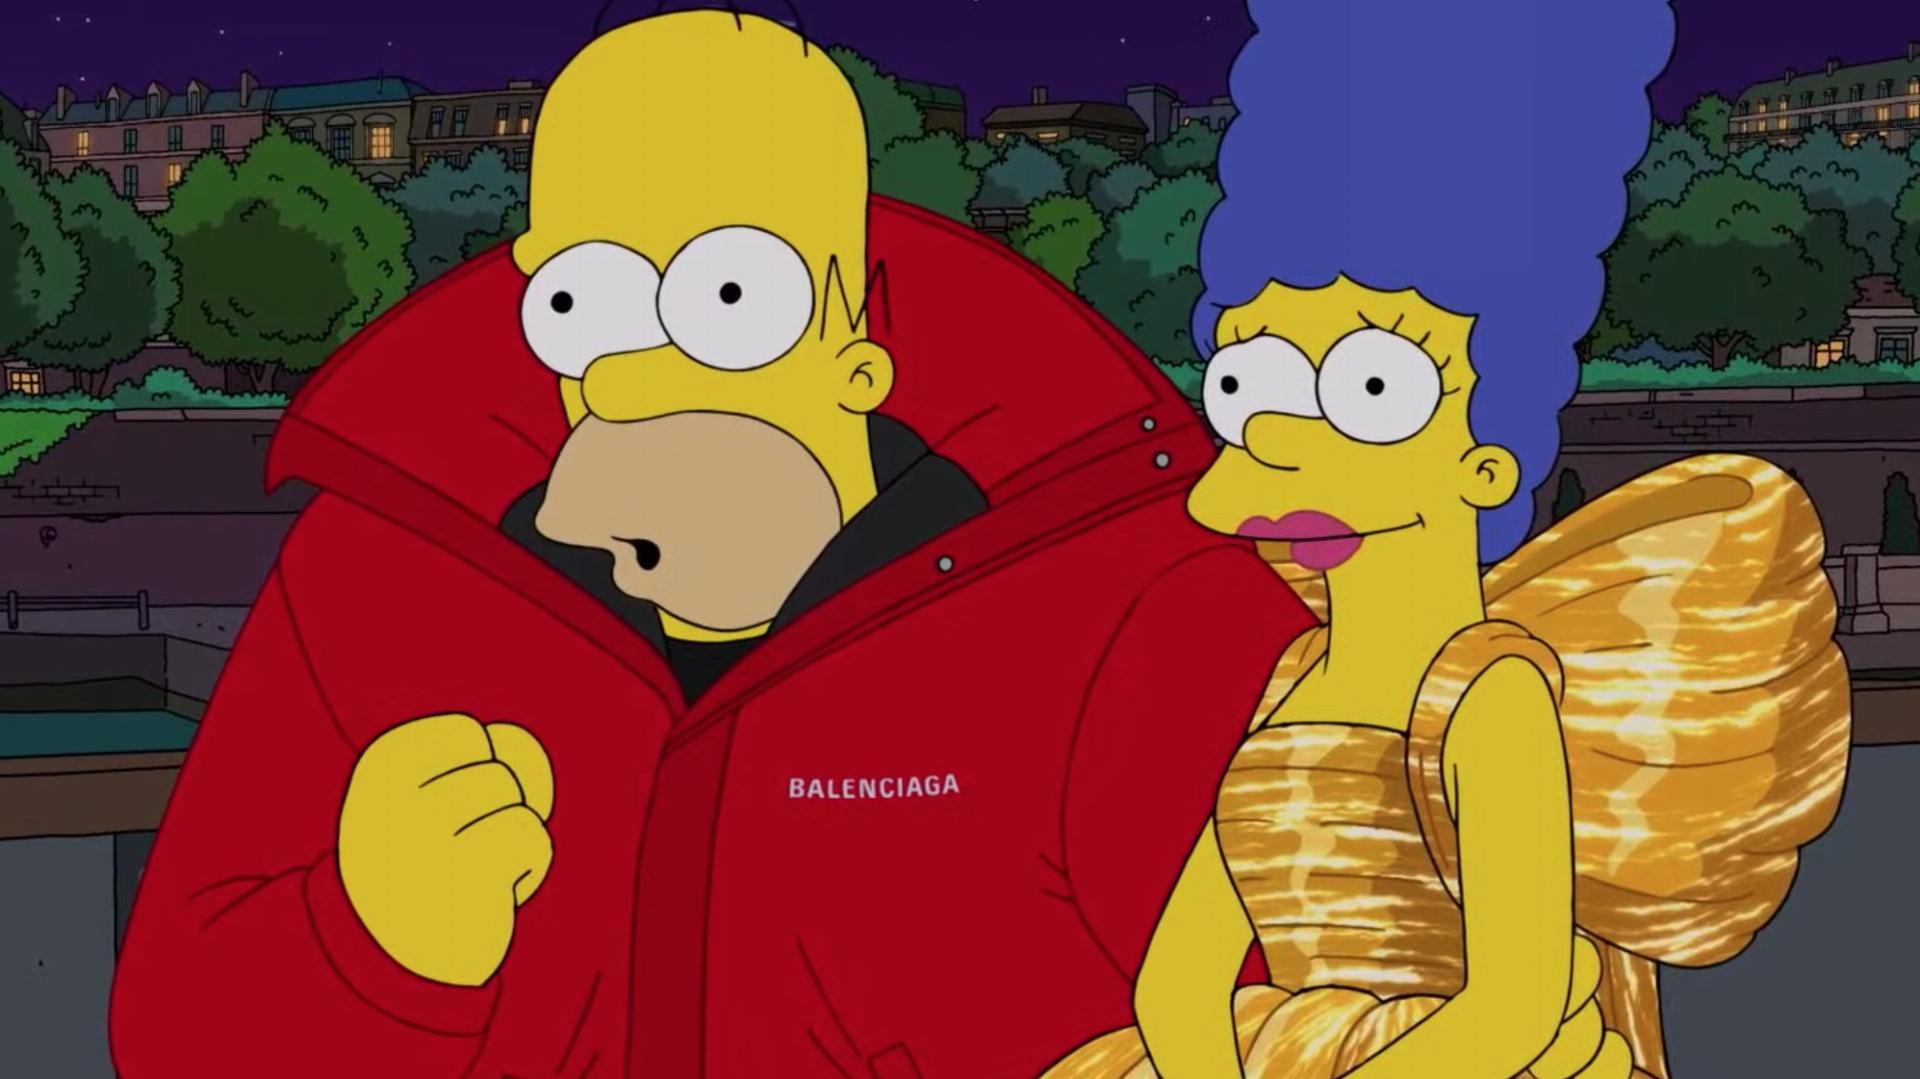 The Simpsons Balenciaga